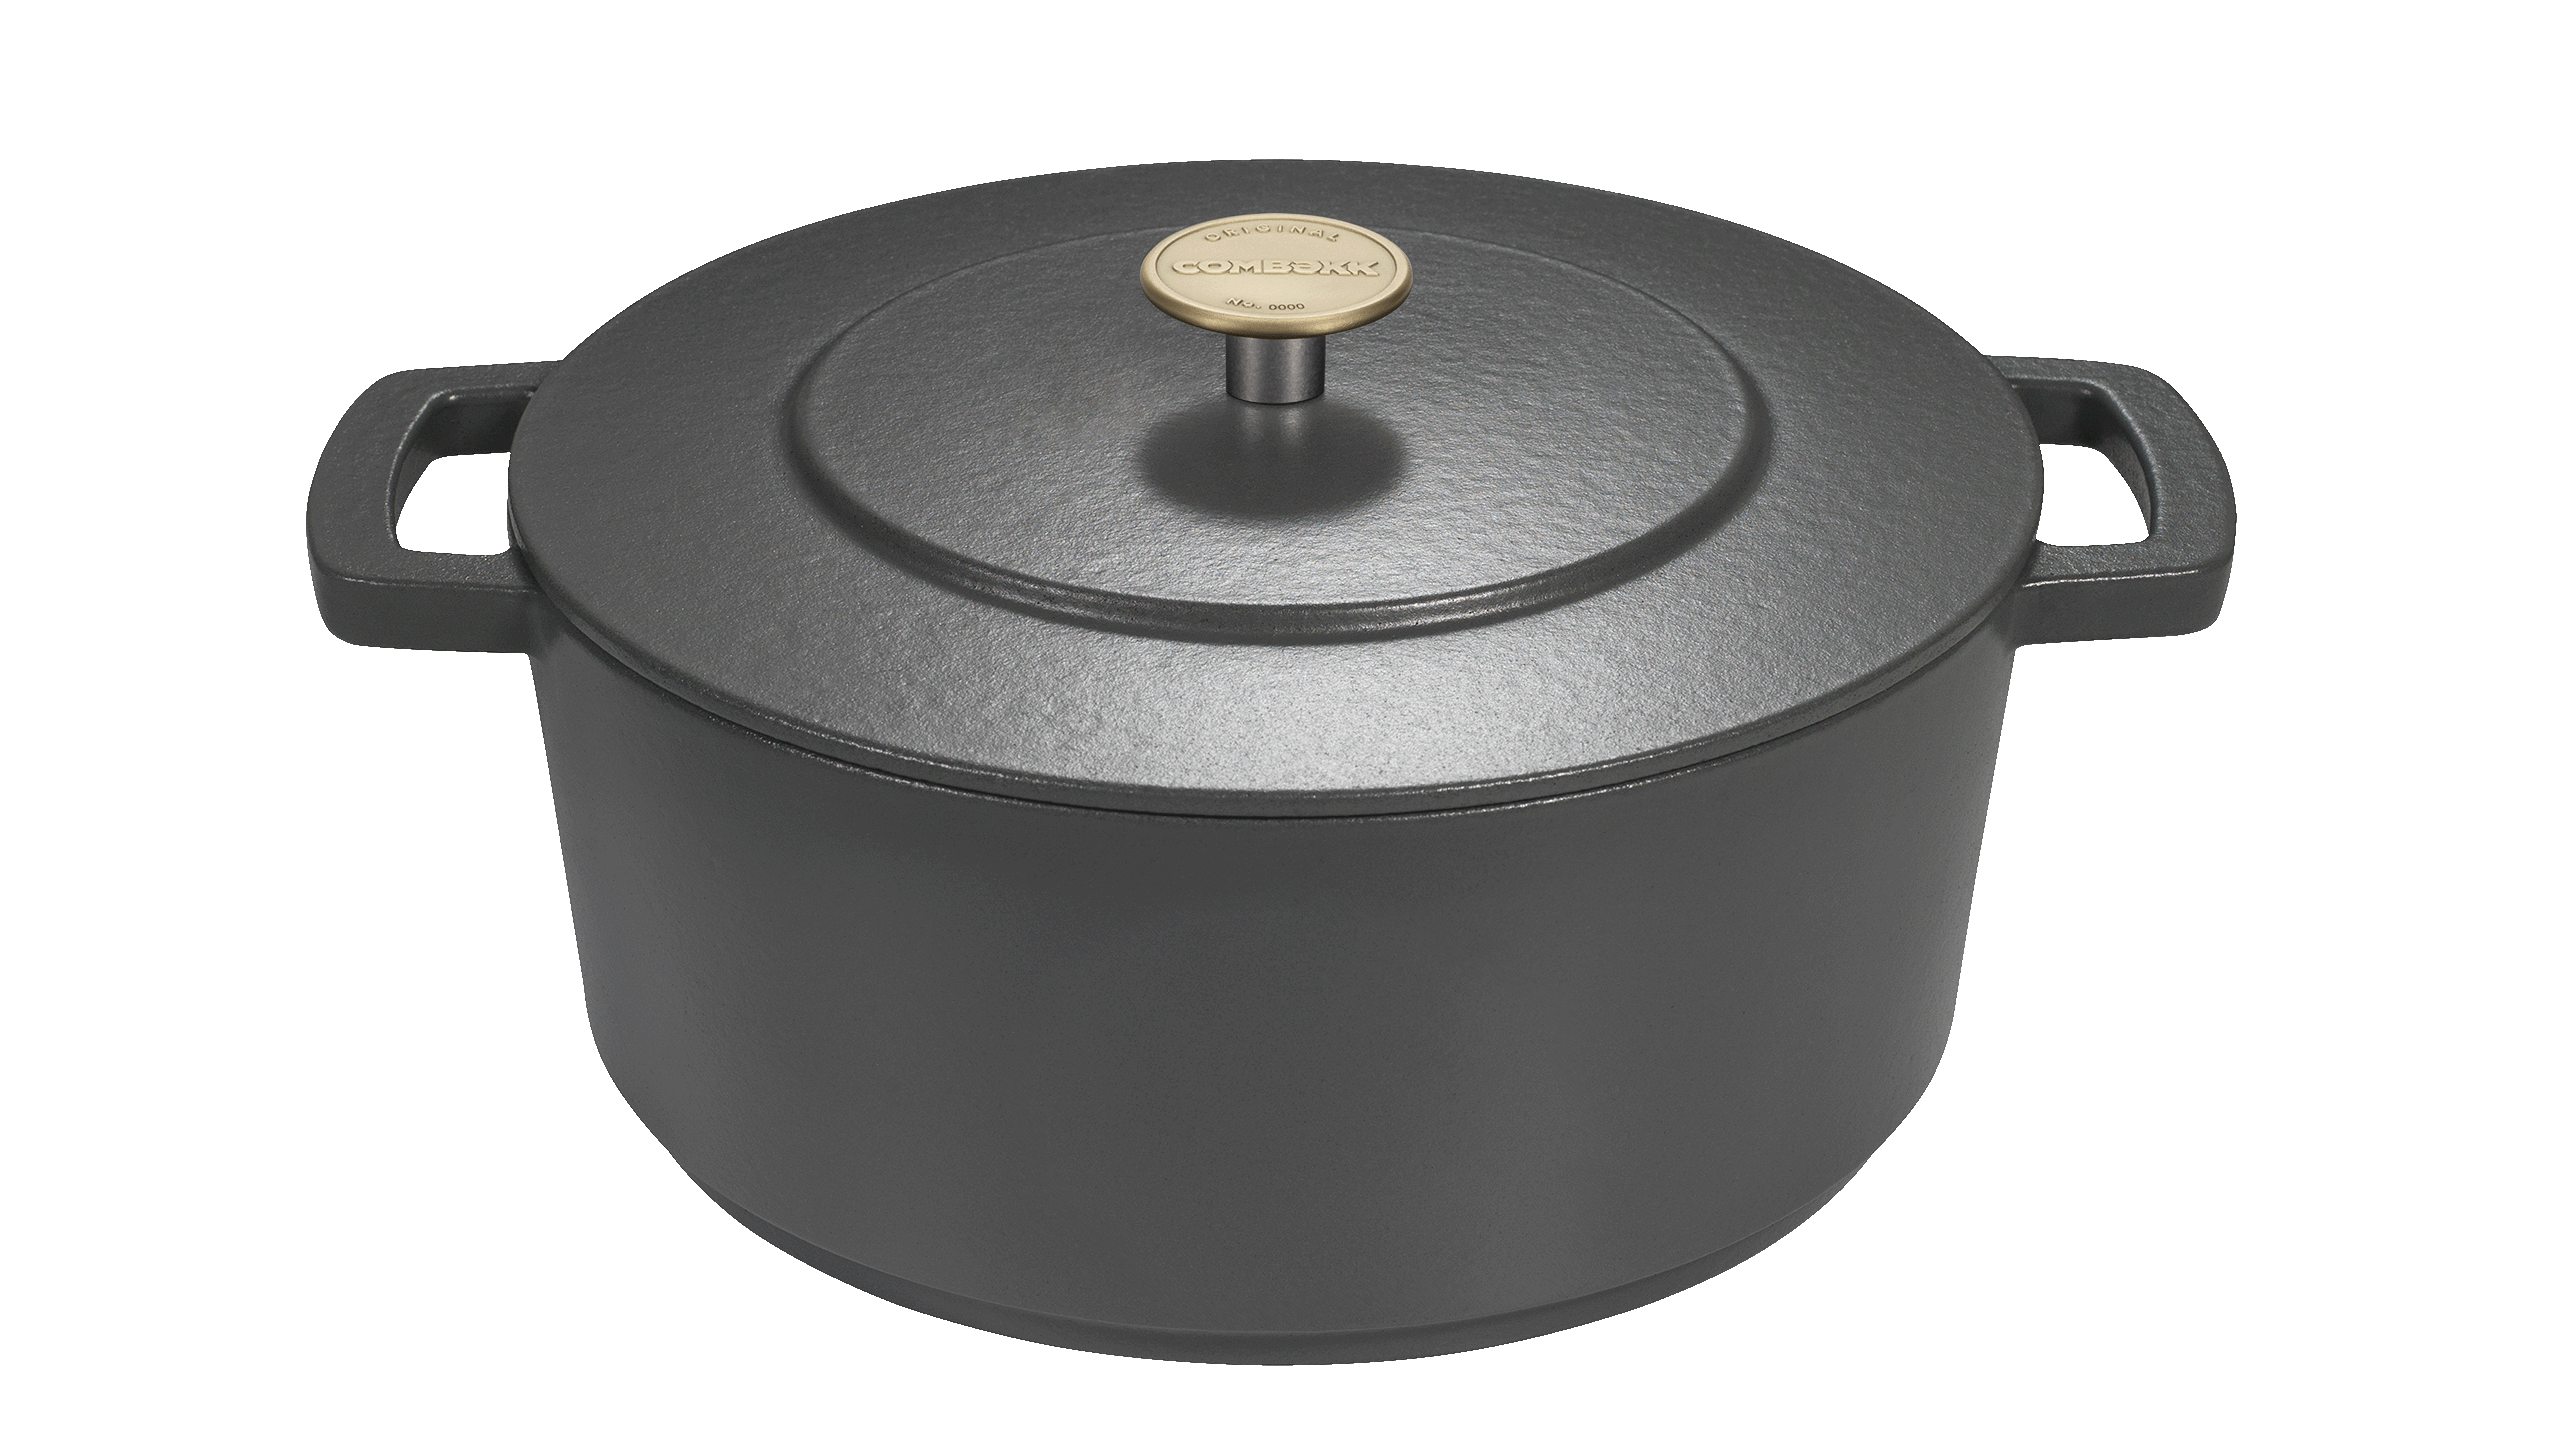 Ceramic Stainless Steel Fry Pan 32cm - Combekk